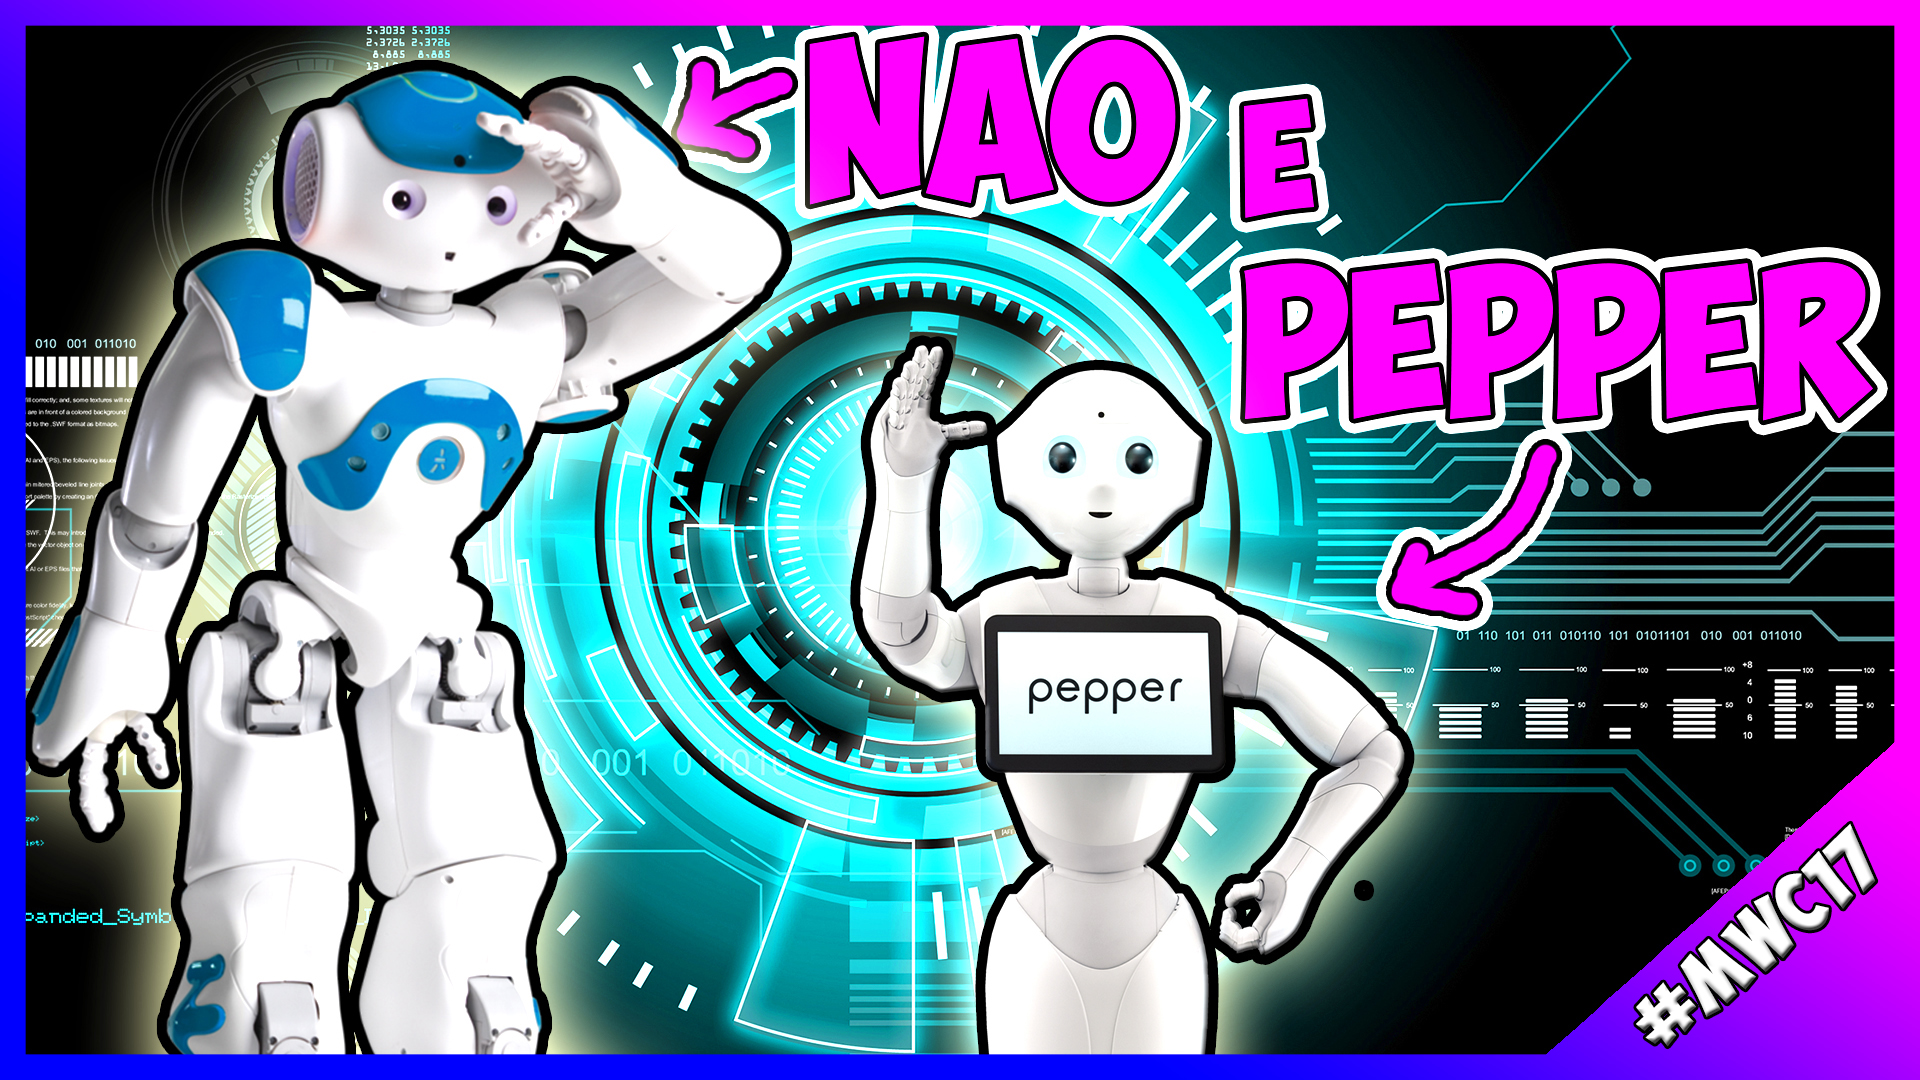 [MWC 2017] Nao e Pepper: conosciamo i due robot di Softbank thumbnail